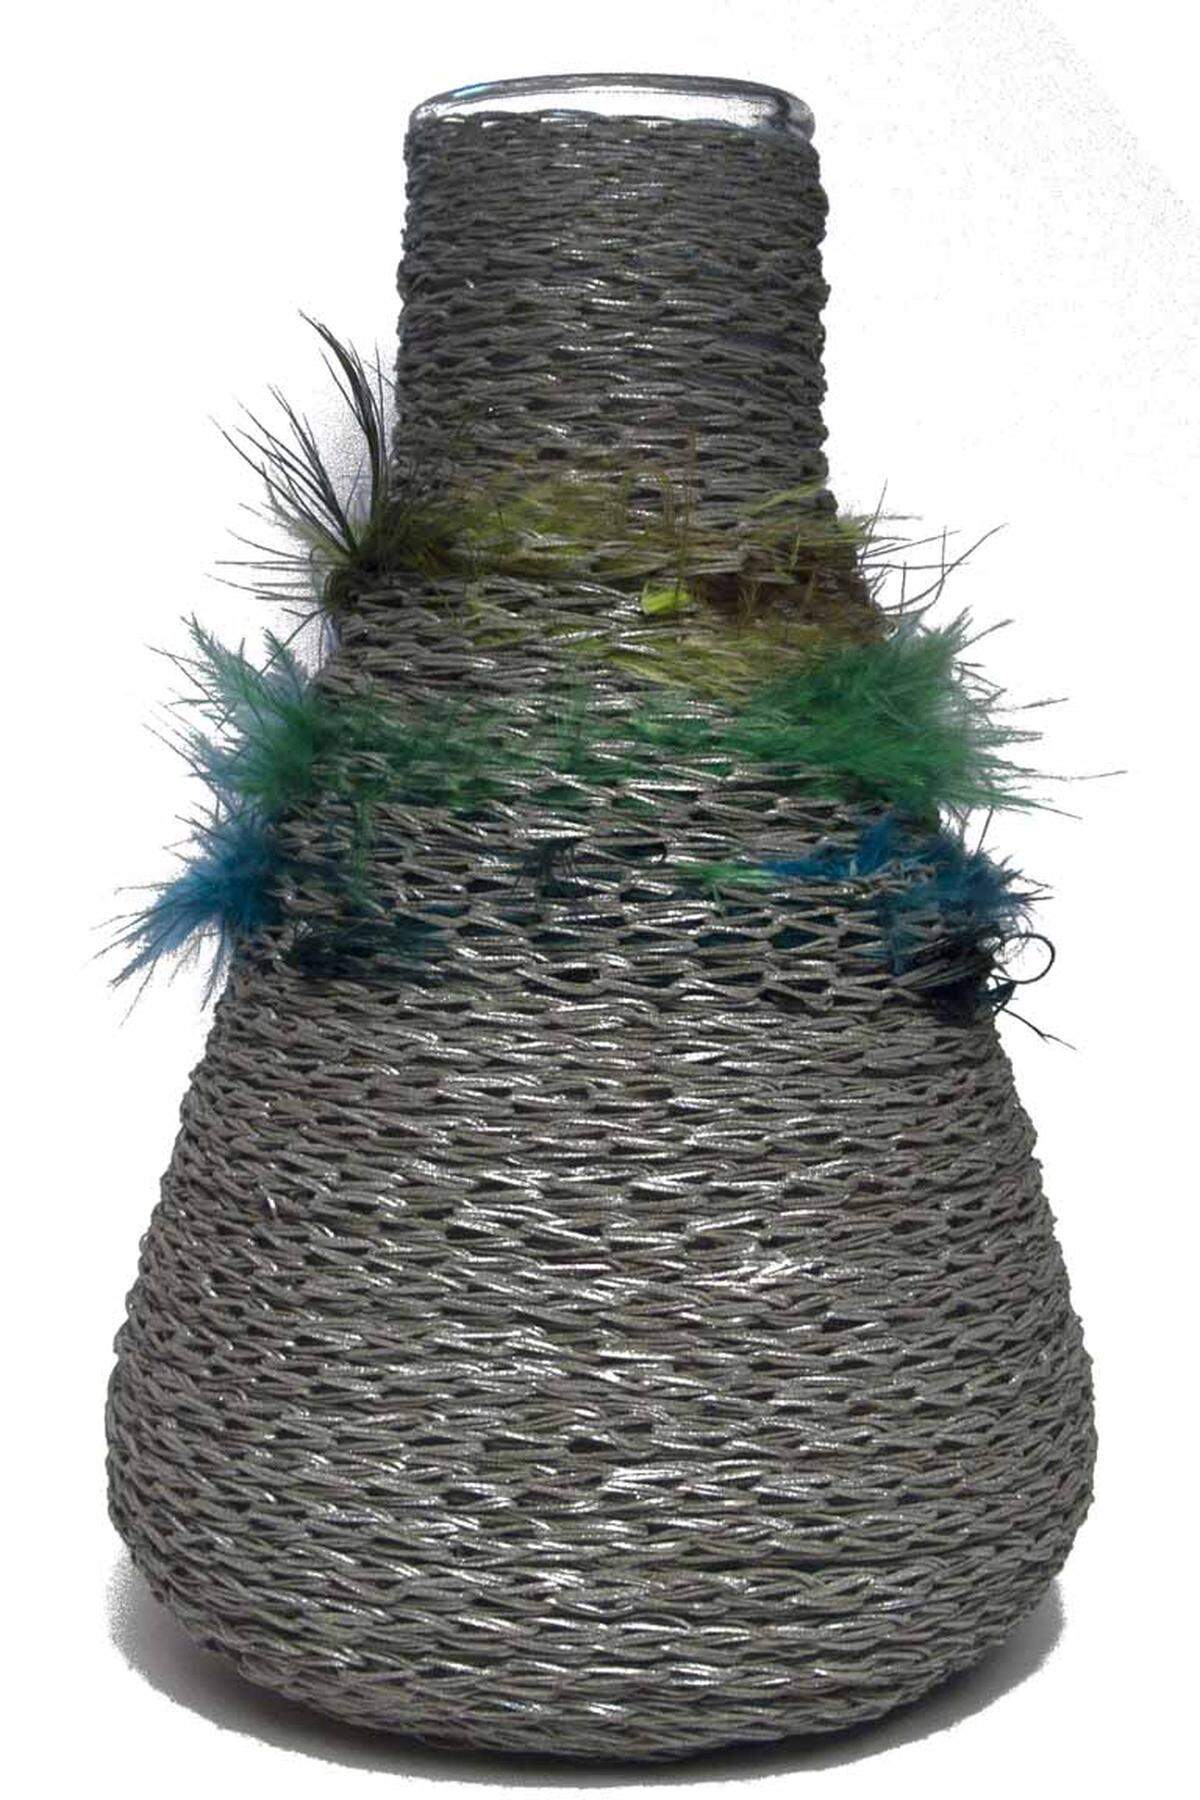 Ein experimenteller Vasenentwurf der New Yorker Designerin Lara Knutson.